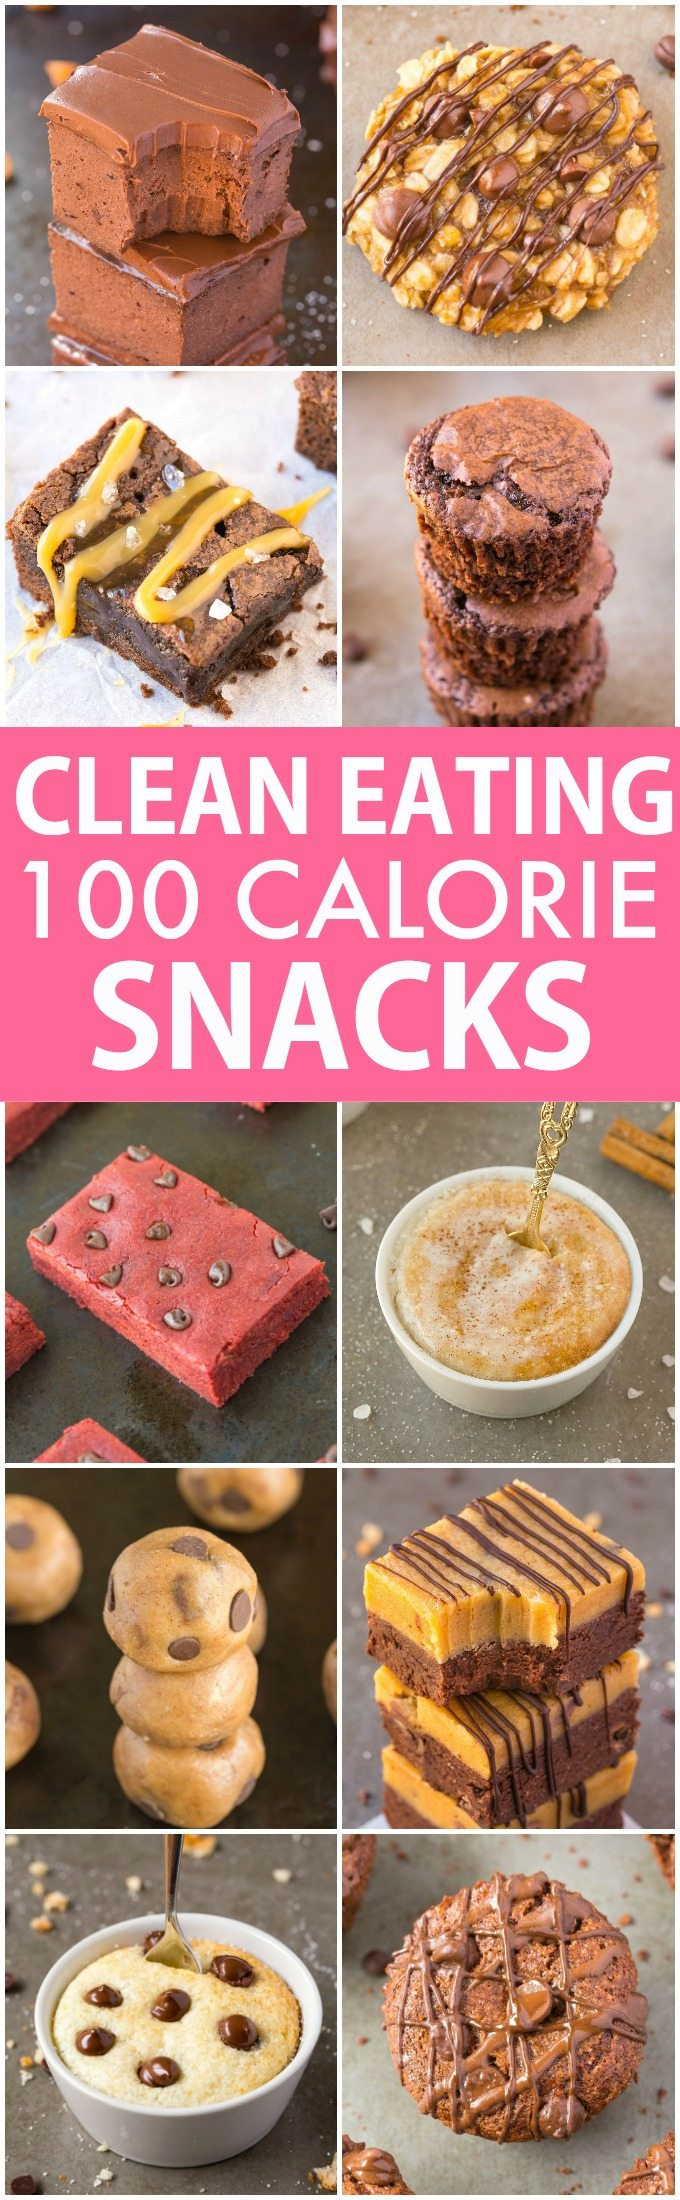 Best Healthy Sweet Snacks
 10 Clean Eating Healthy Sweet Snacks Under 100 Calories